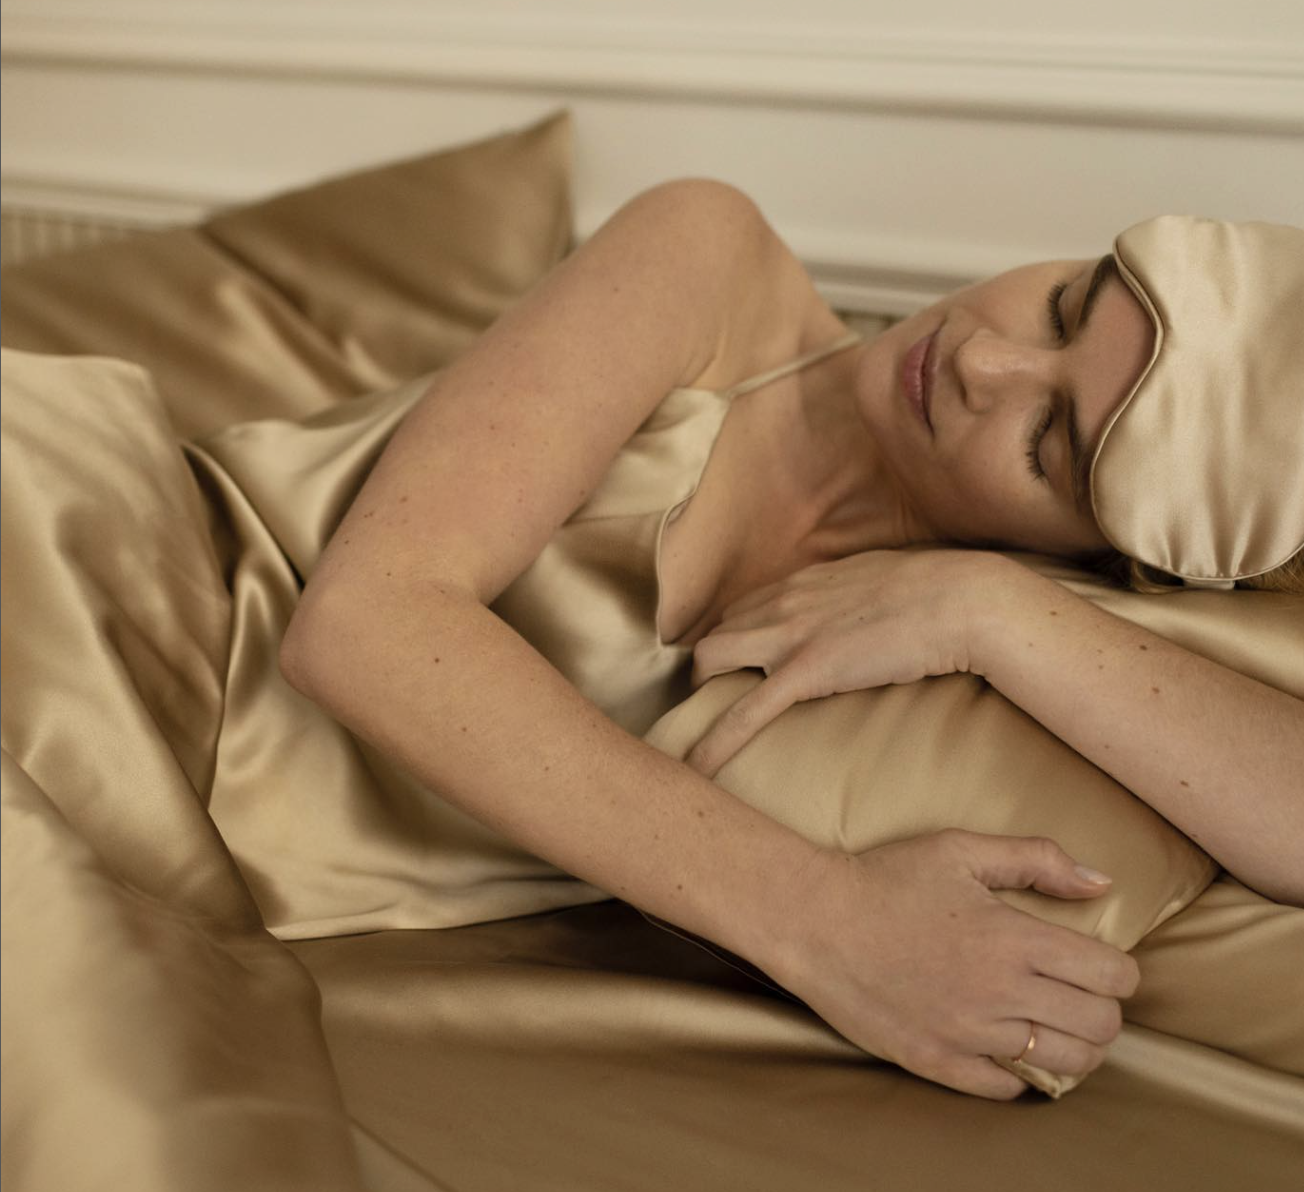 El nuevo tratamiento de belleza infalible: dormir en una almohada